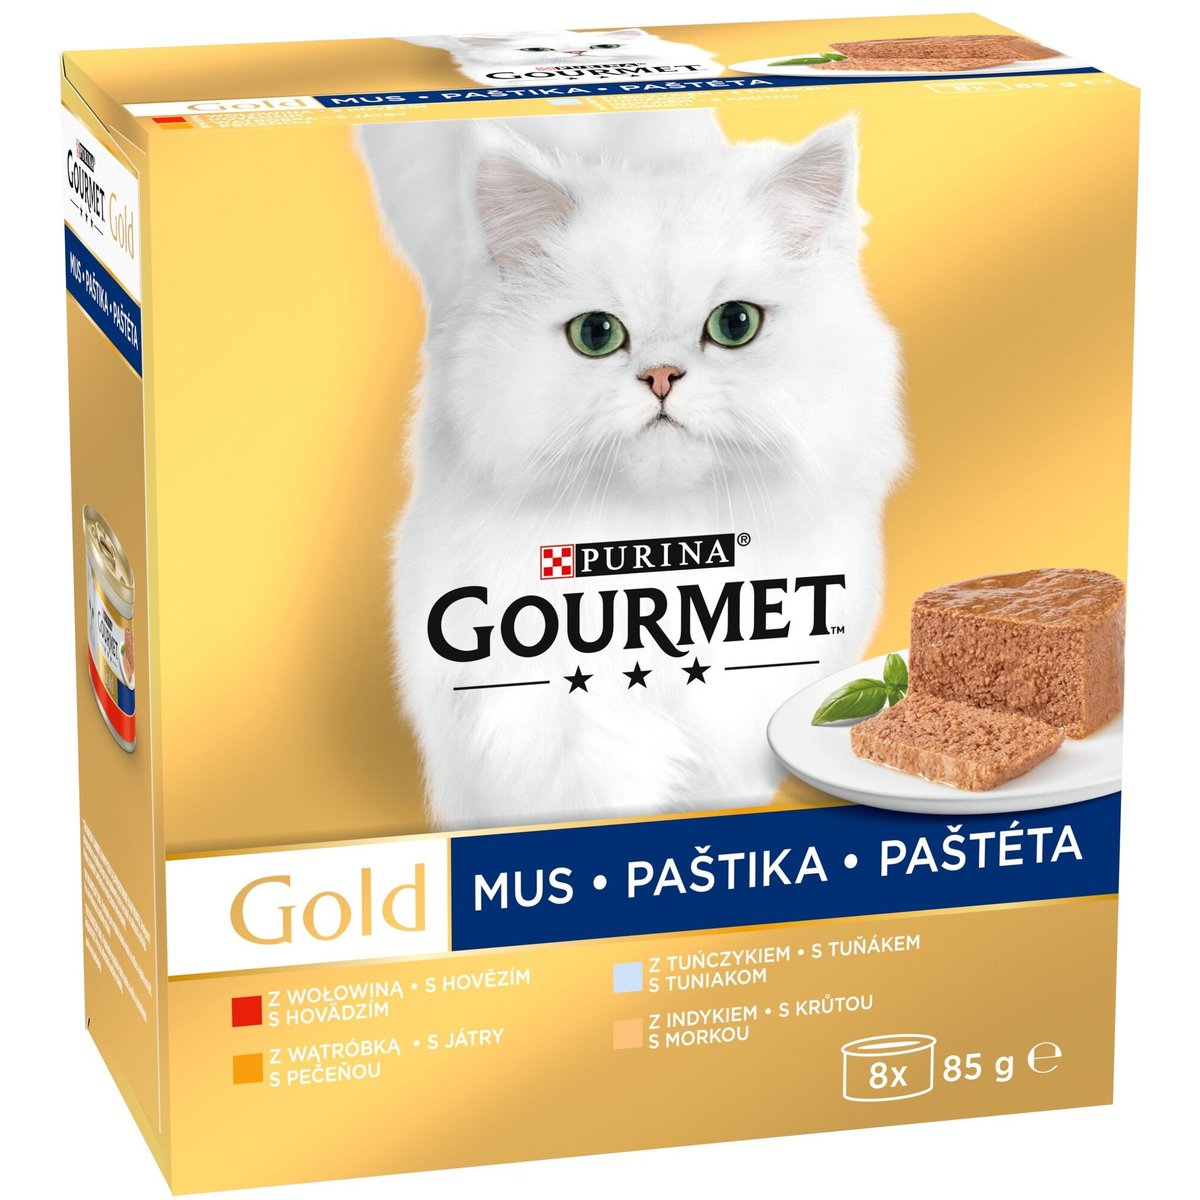 Gourmet Gold Multipack jemné paštiky 8×85 g pro kočky